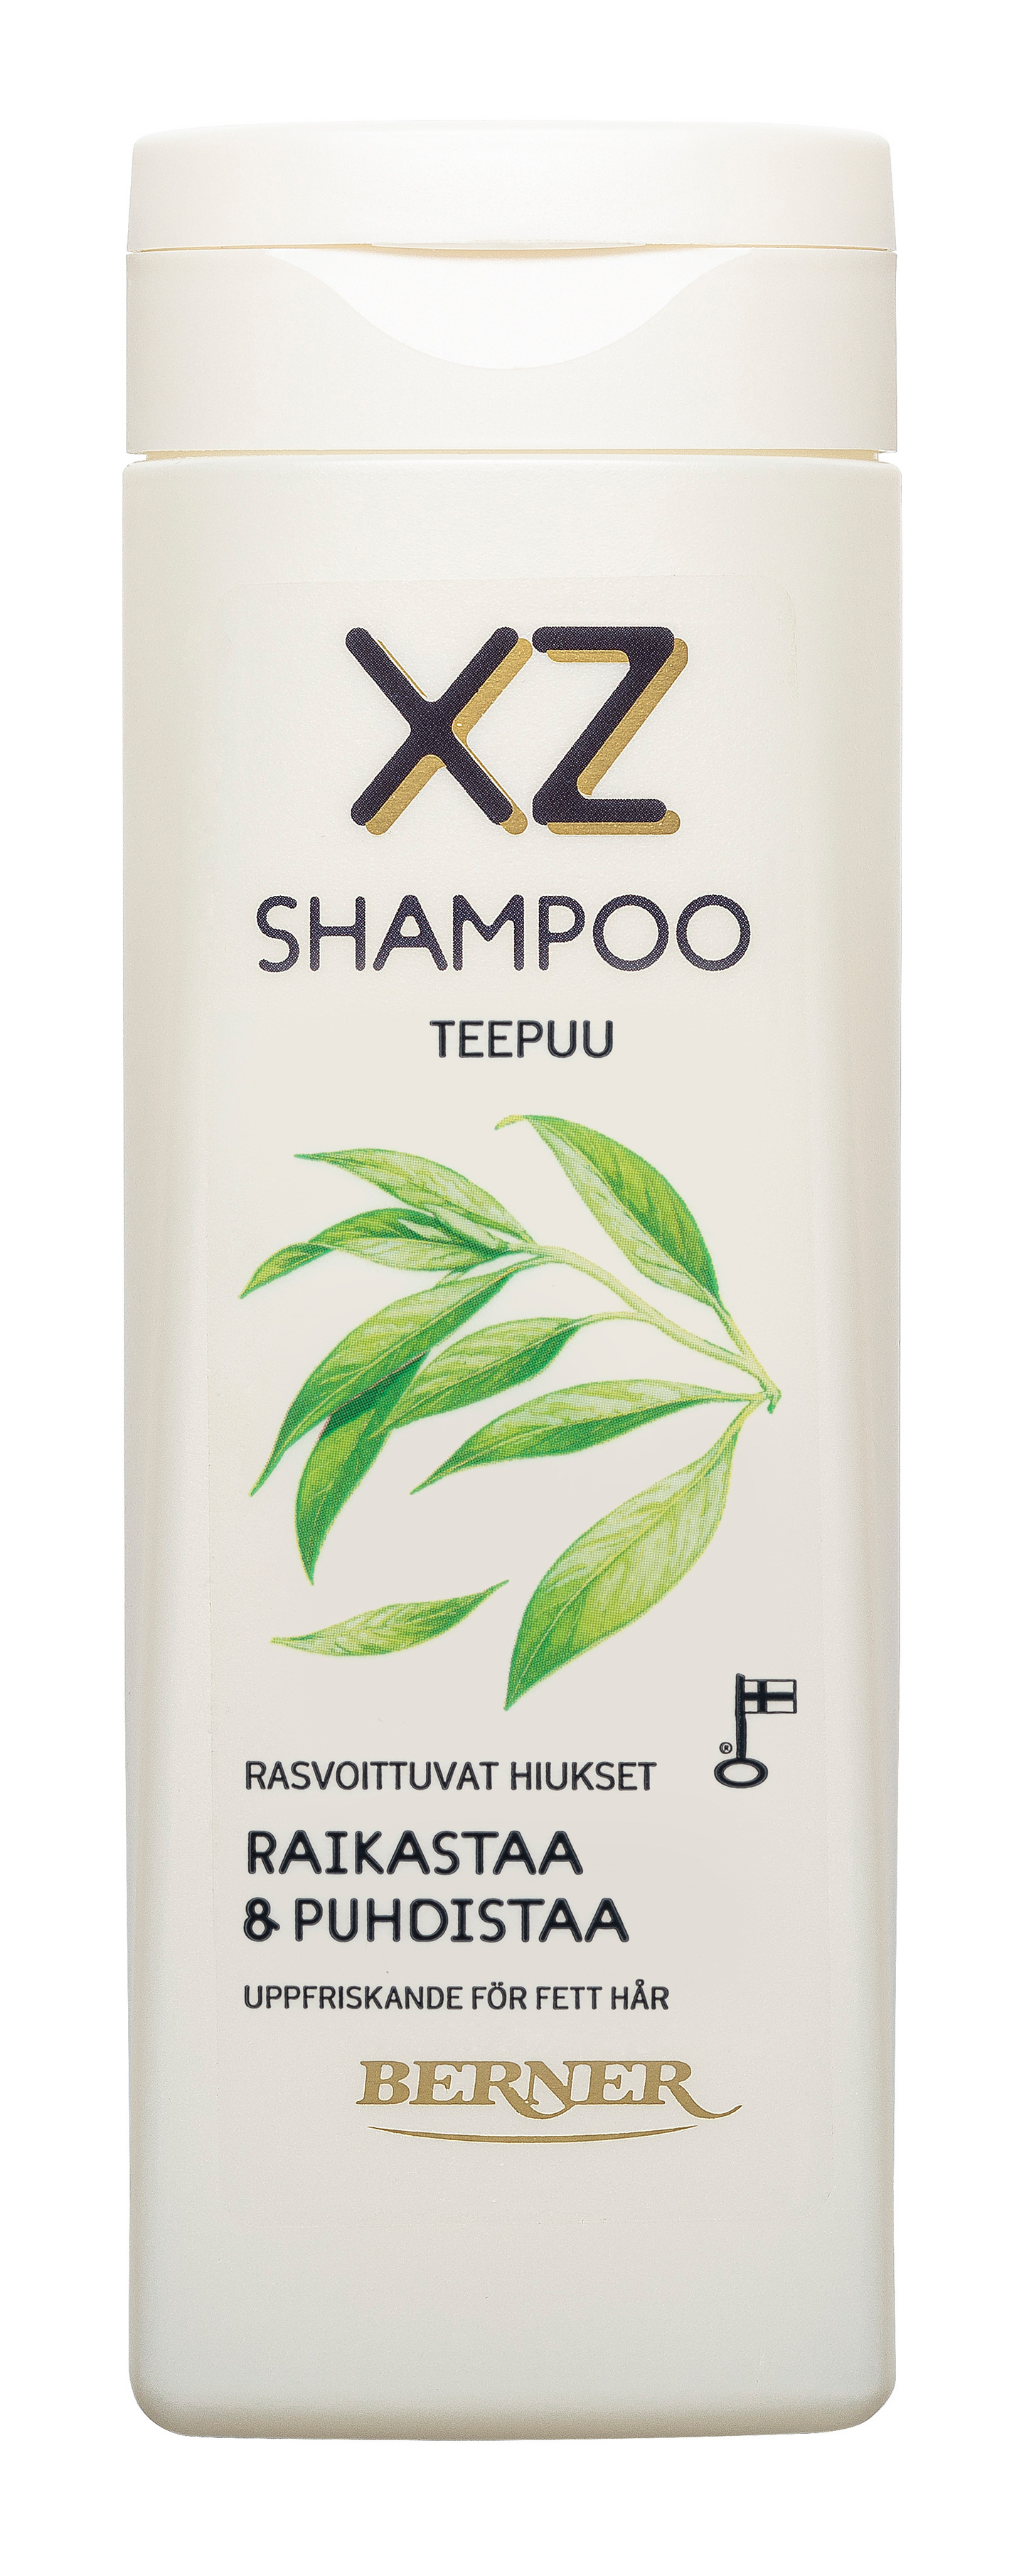 XZ shampoo 250ml Teepuu